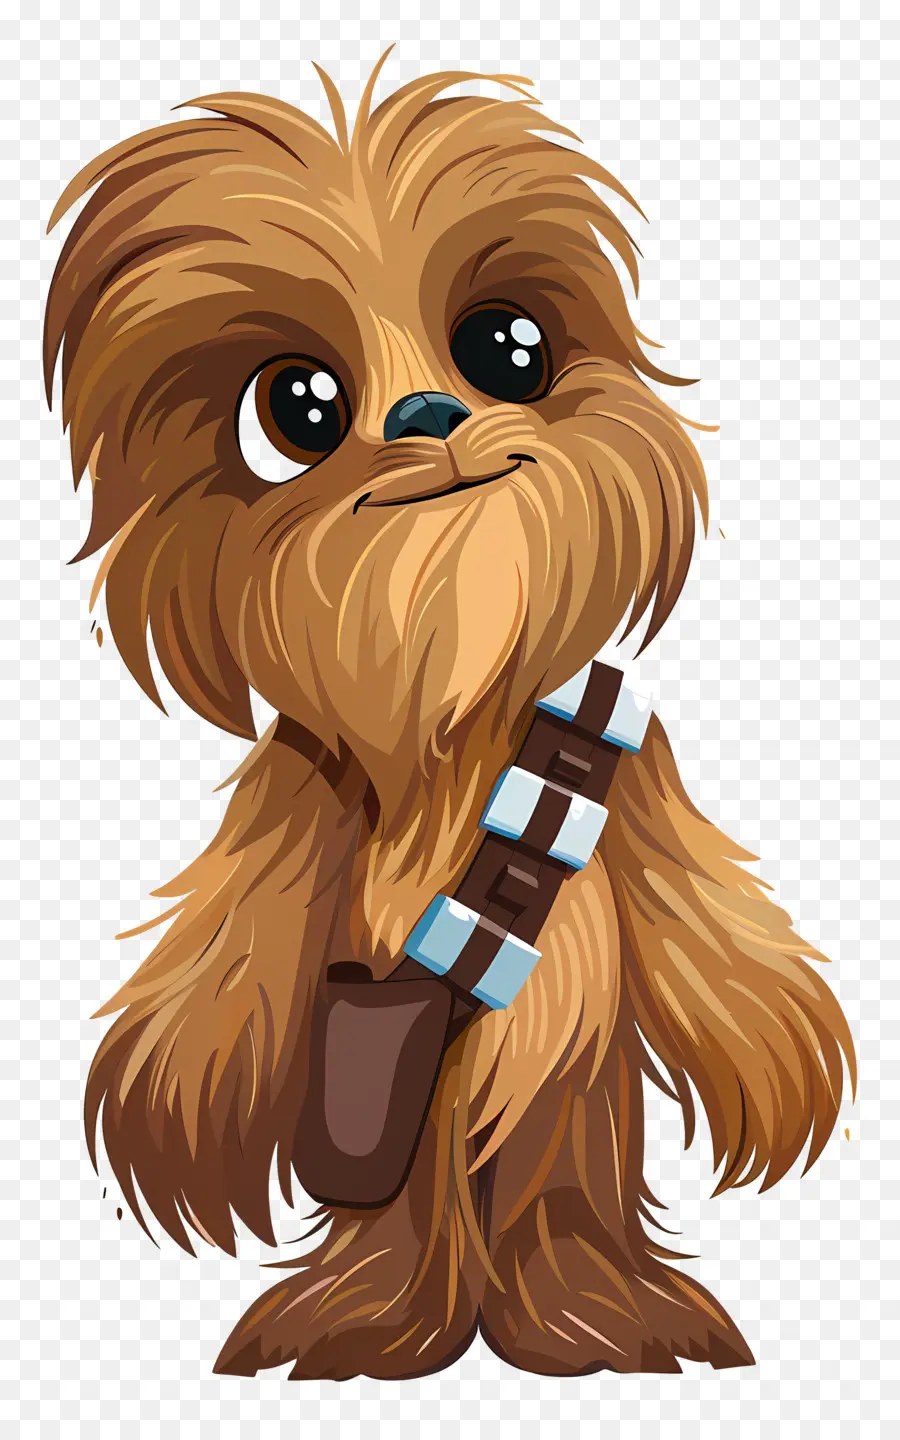 chiến tranh giữa các vì sao - Happy Chewbacca mặc trang phục màu nâu đứng tự tin